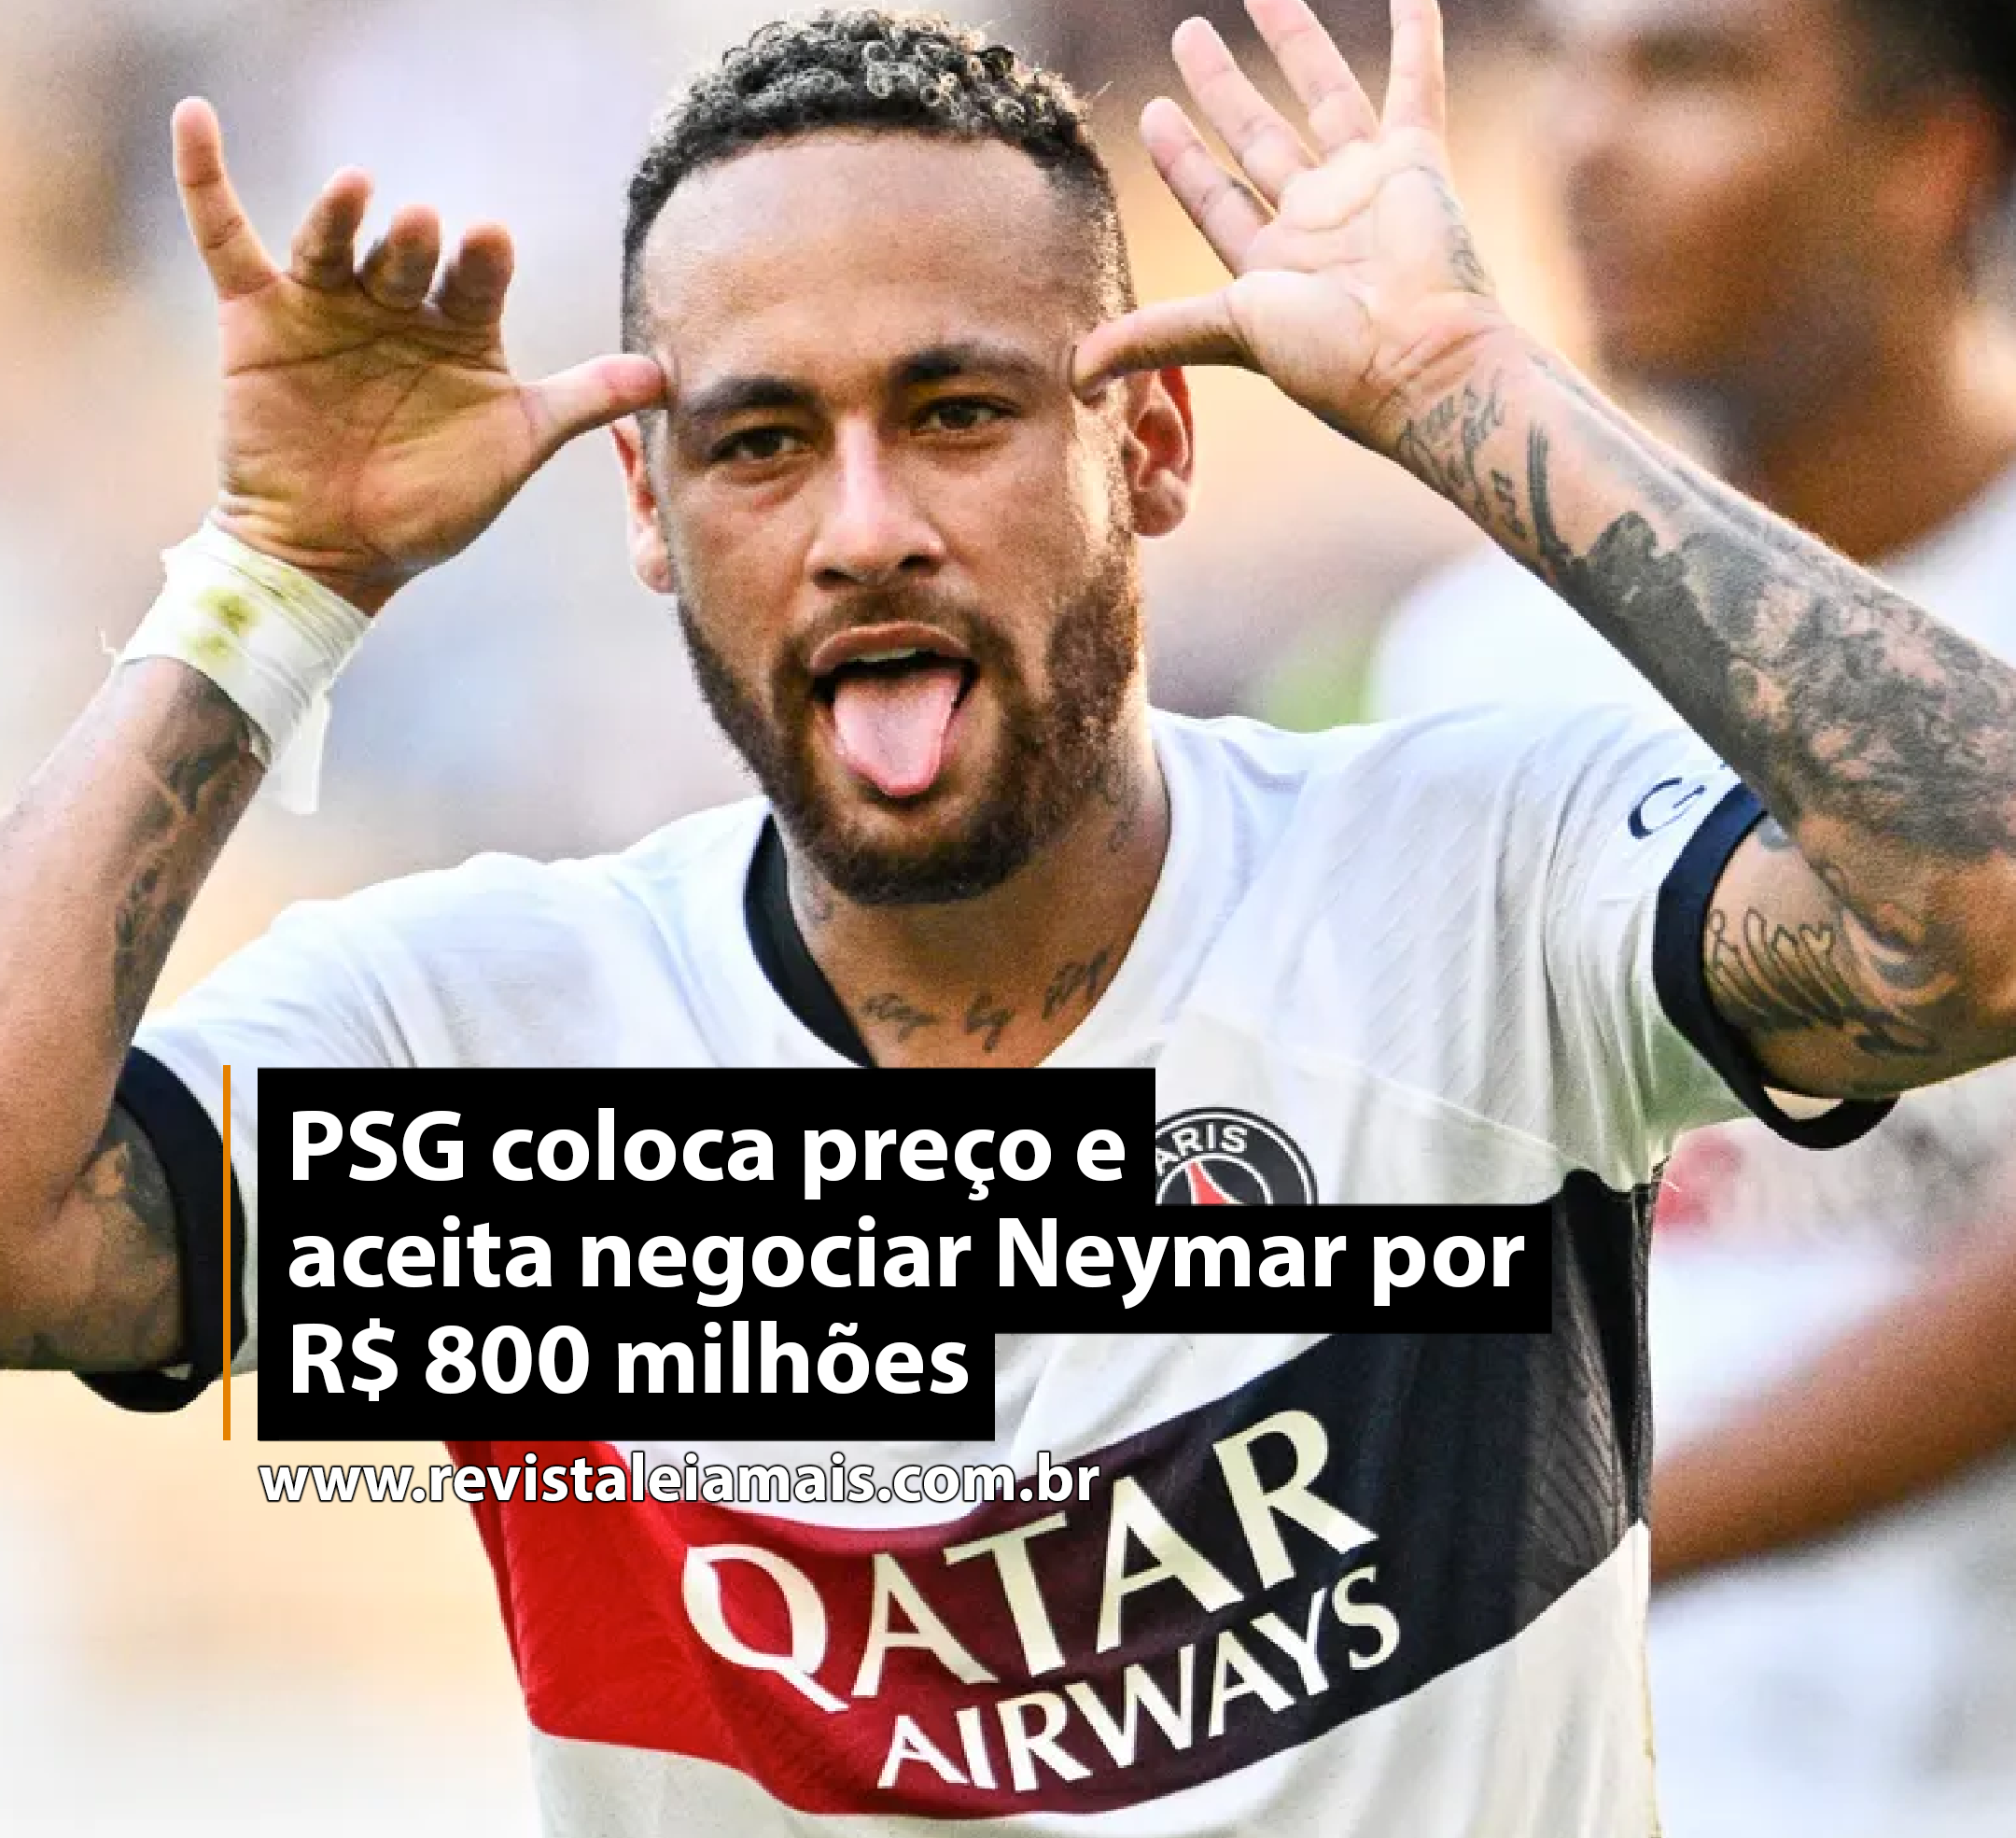 PSG coloca preço e aceita negociar Neymar por R$ 800 milhões